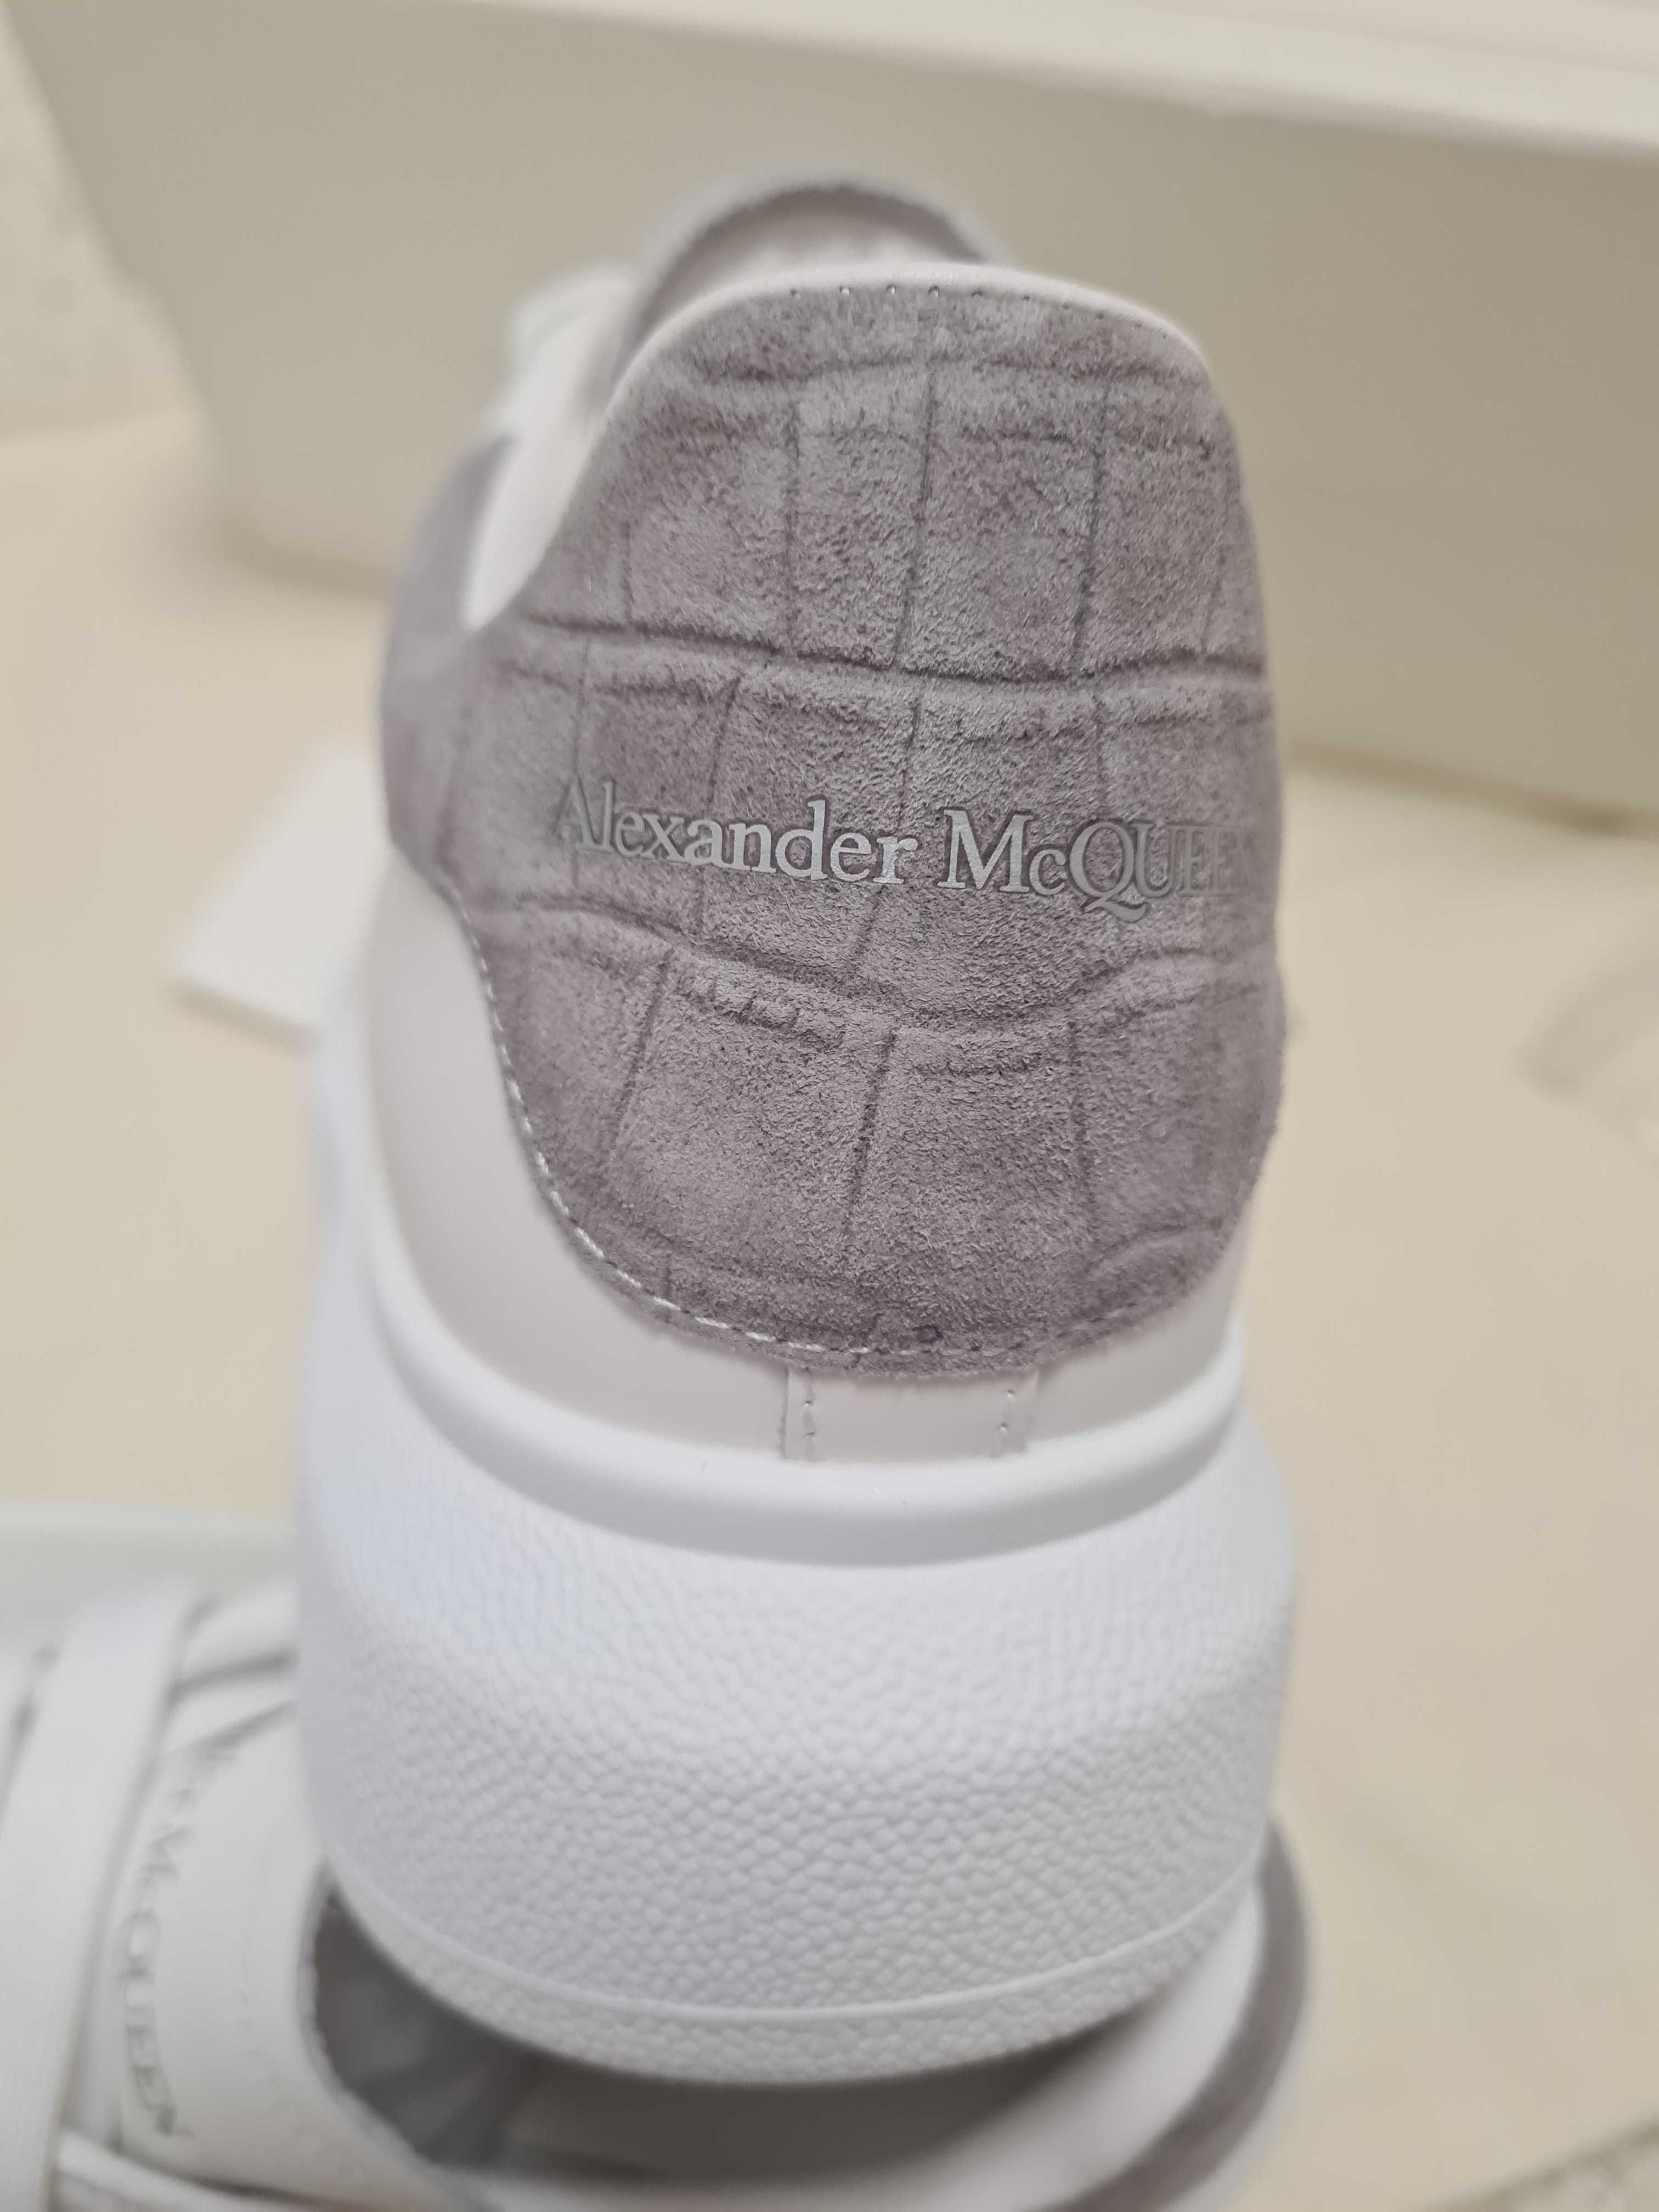 Adidasi Alexander Mcqueen Grey, /marimea 35/ calitate Premium, Unisex